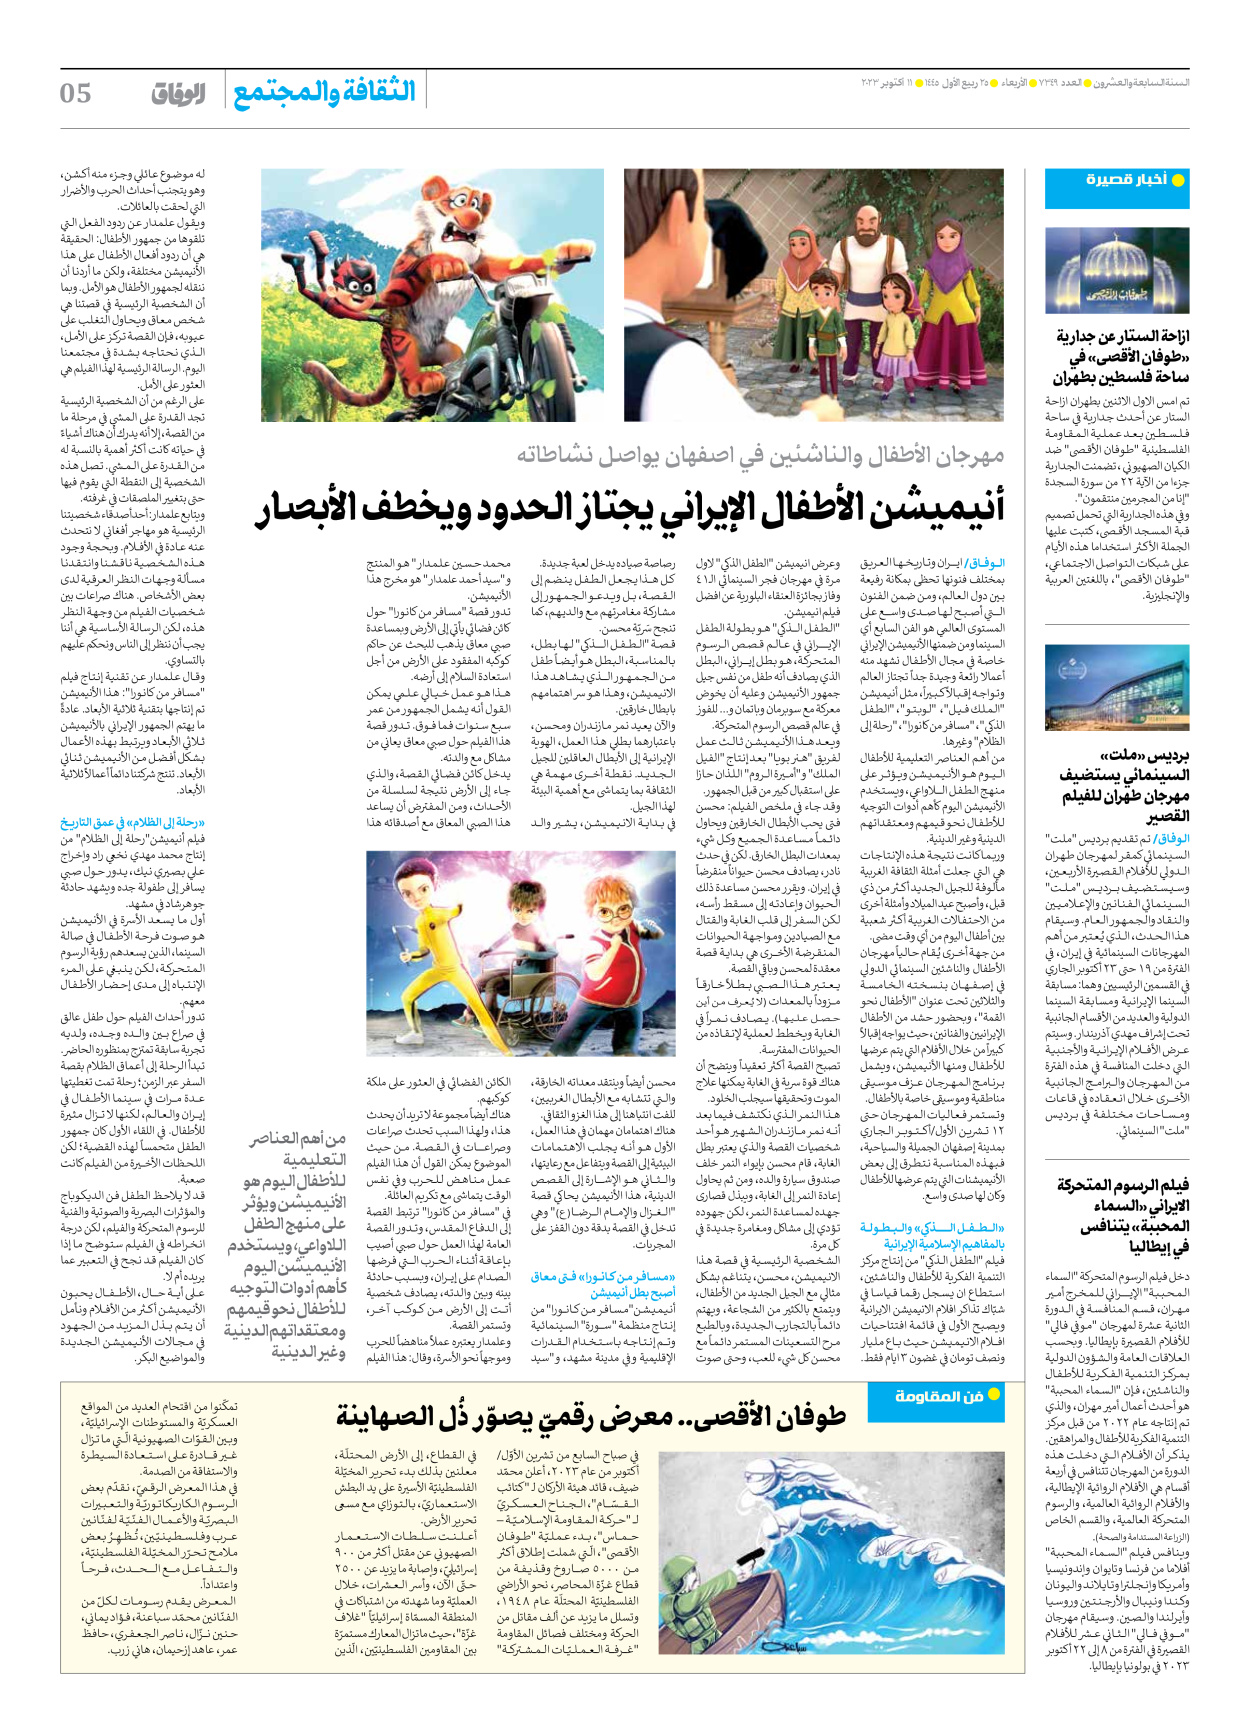 صحیفة ایران الدولیة الوفاق - العدد سبعة آلاف وثلاثمائة وتسعة وأربعون - ١١ أكتوبر ٢٠٢٣ - الصفحة ٥